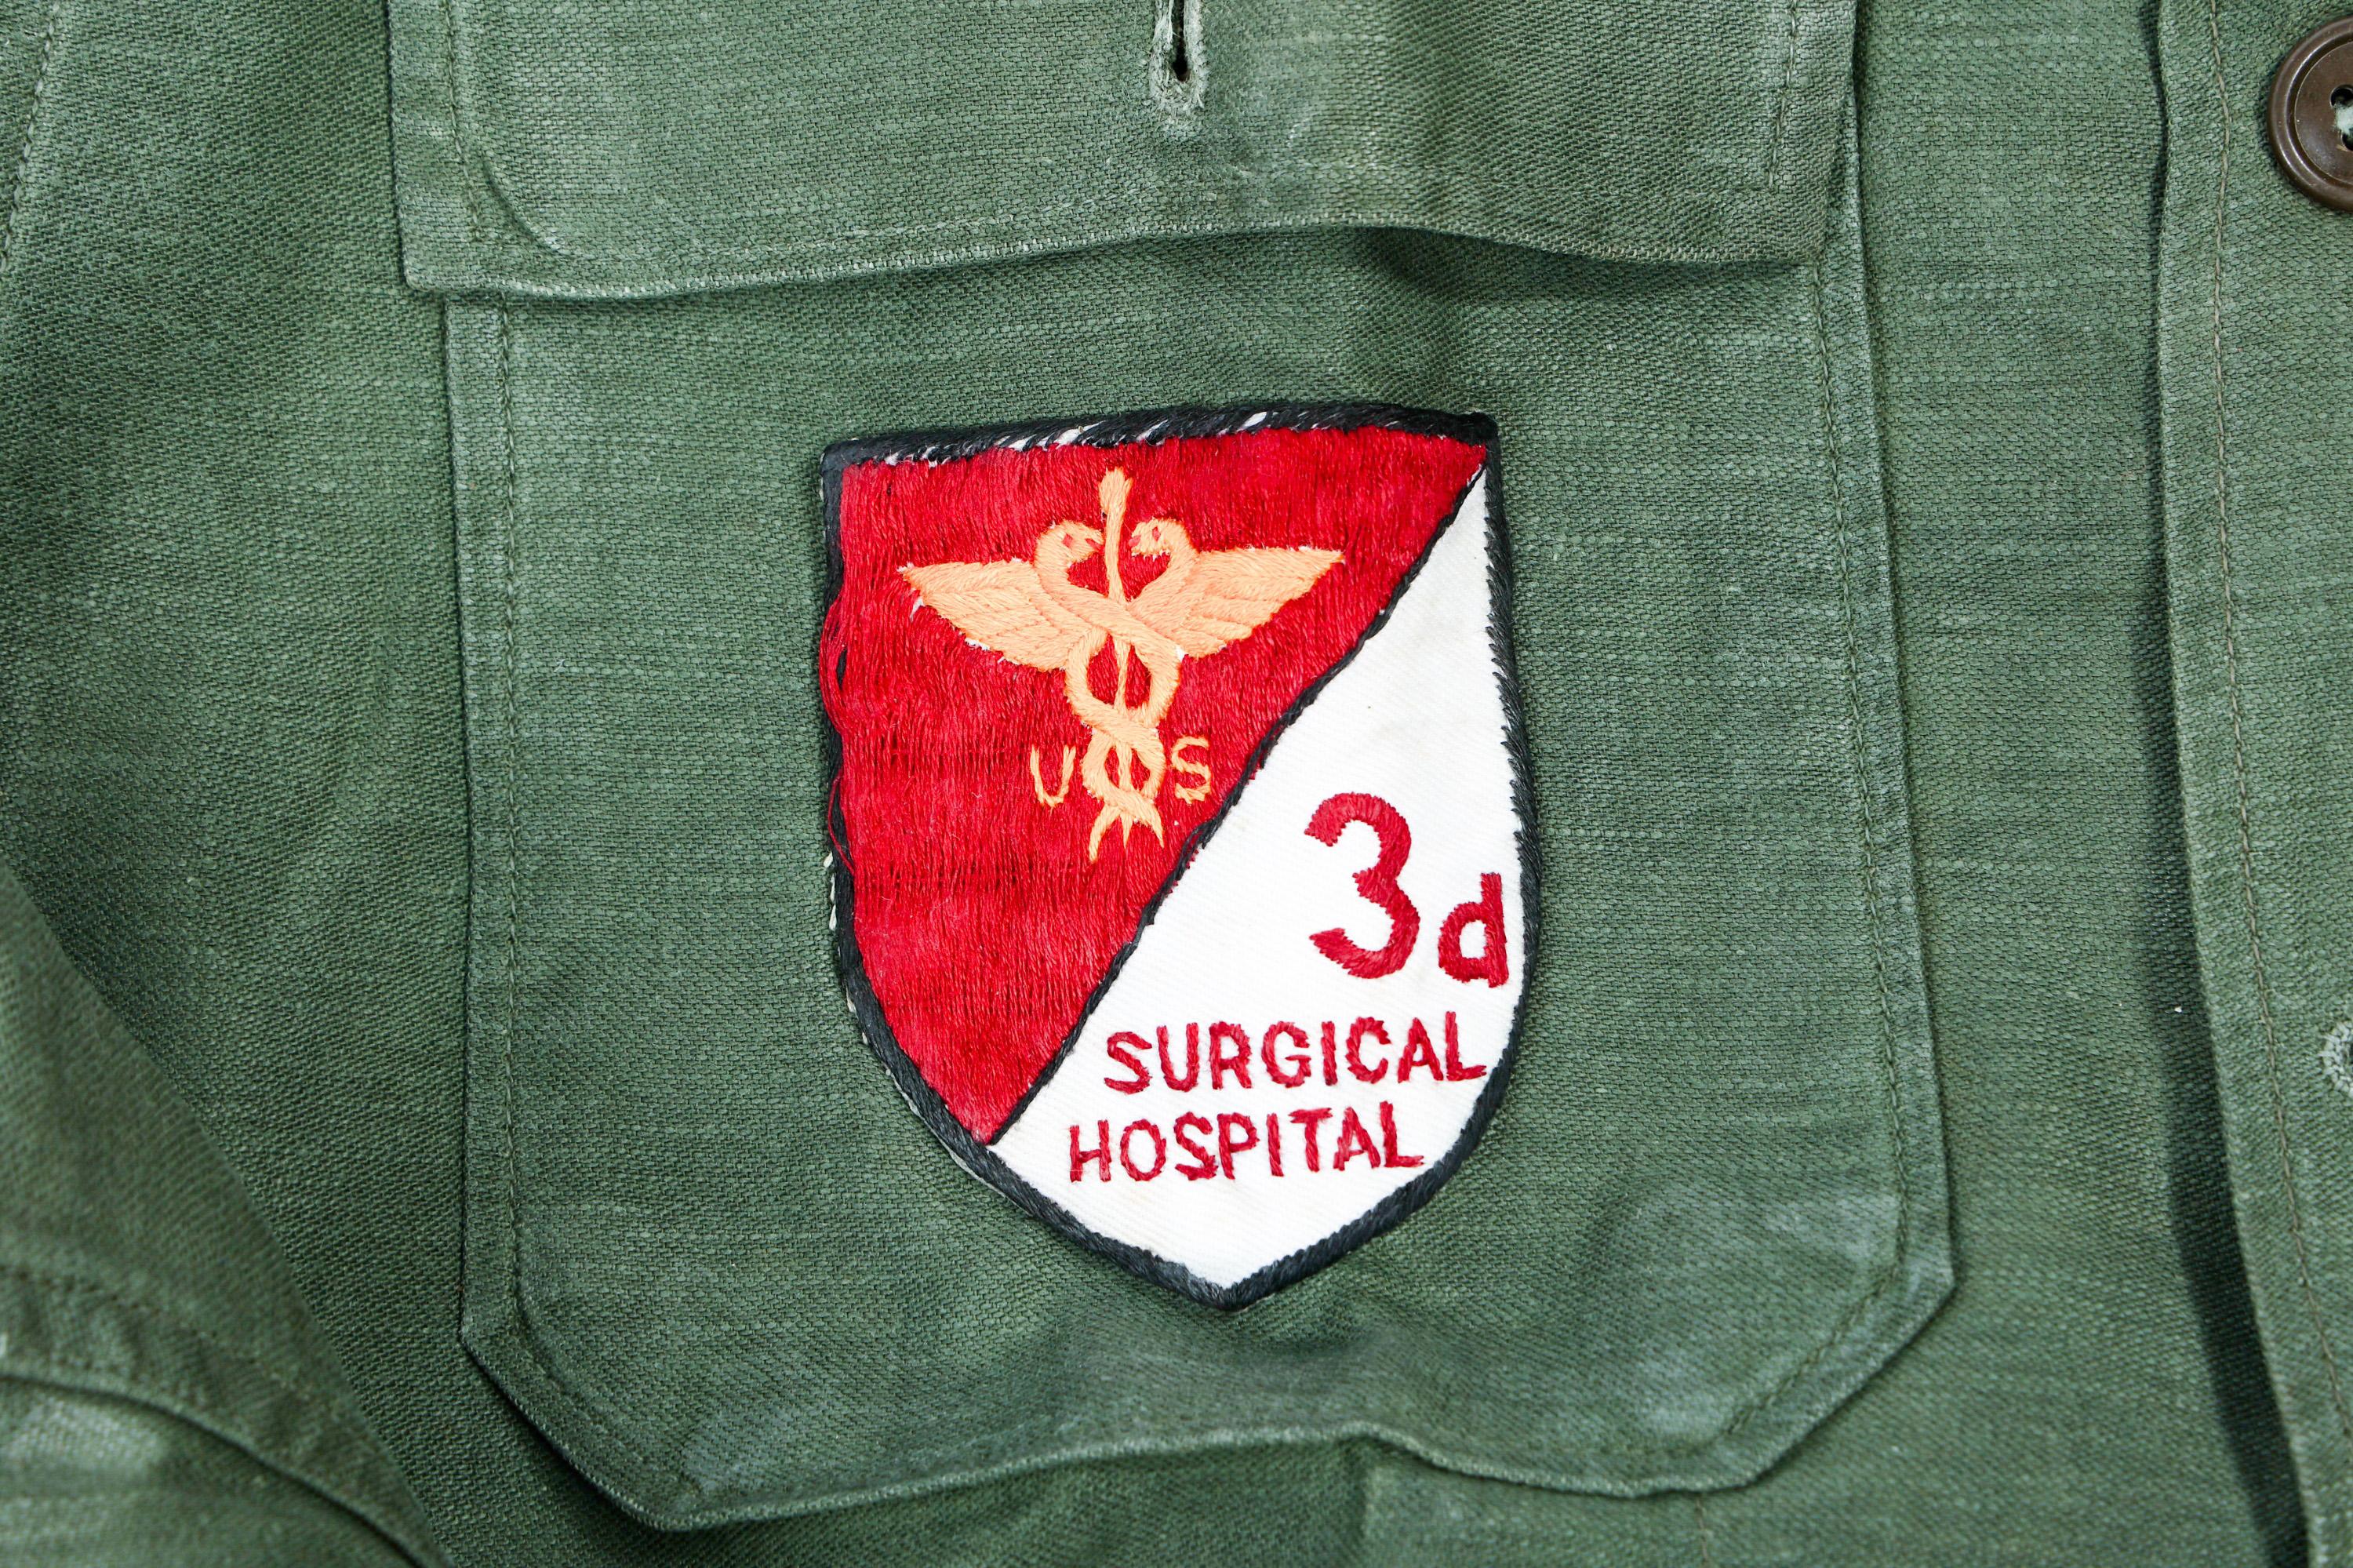 VIETNAM WAR US 3rd SURGICAL HOSPITAL UNIFORMS